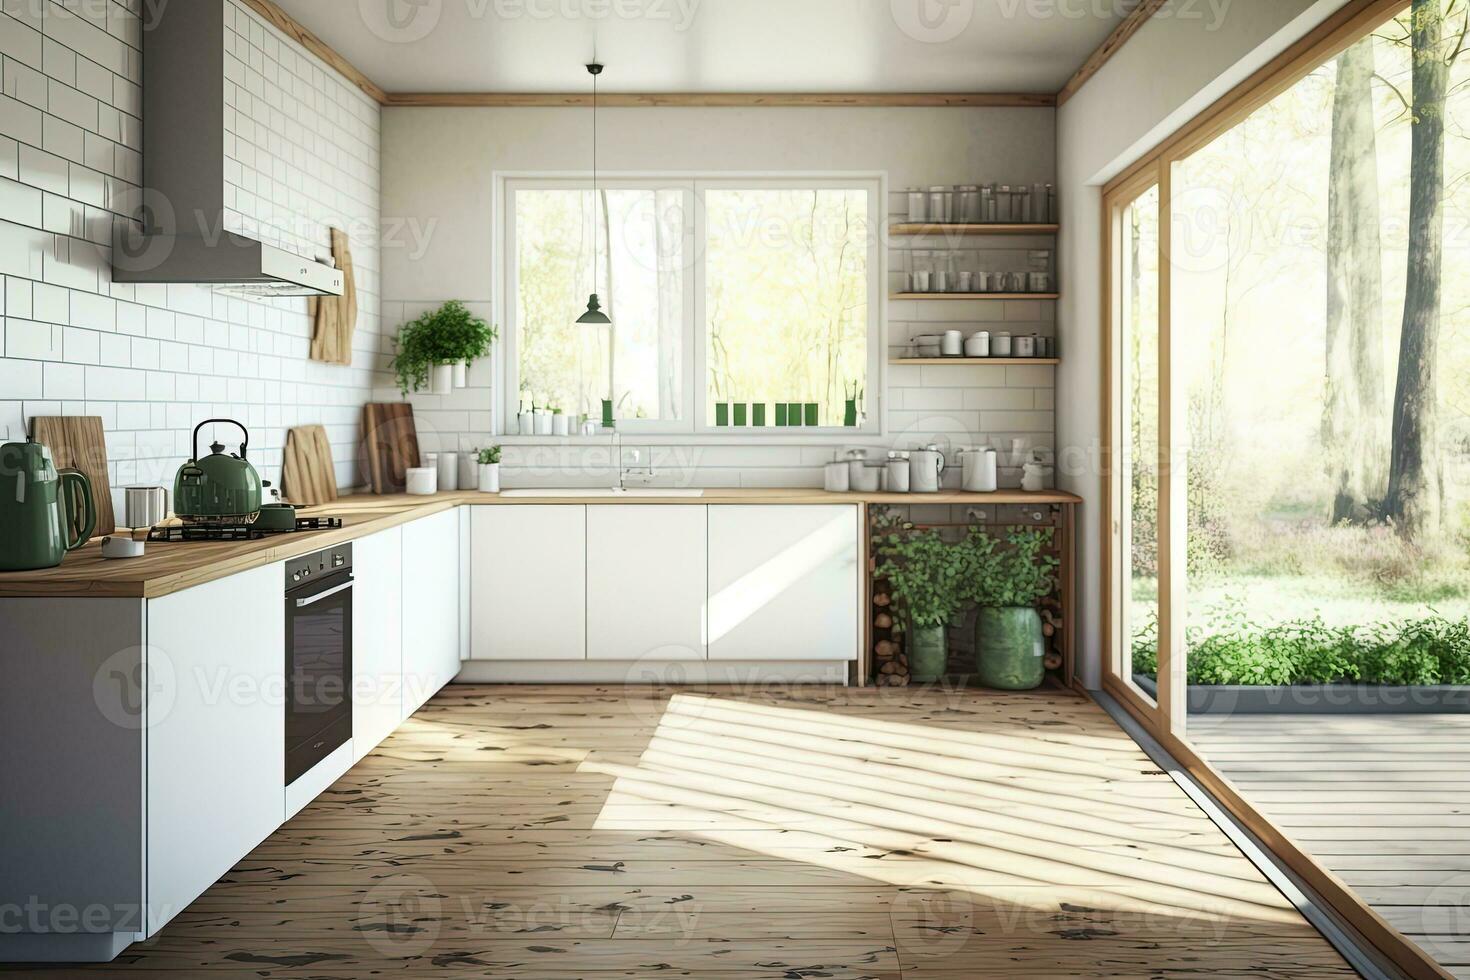 een mooi, realistisch ochtend- in een hedendaags keuken met ramen, natuurlijk licht, de schaduw van bladeren, en een houten verdieping op welke naar reeks uit divers keukengerei voor uitverkoop. huis foto